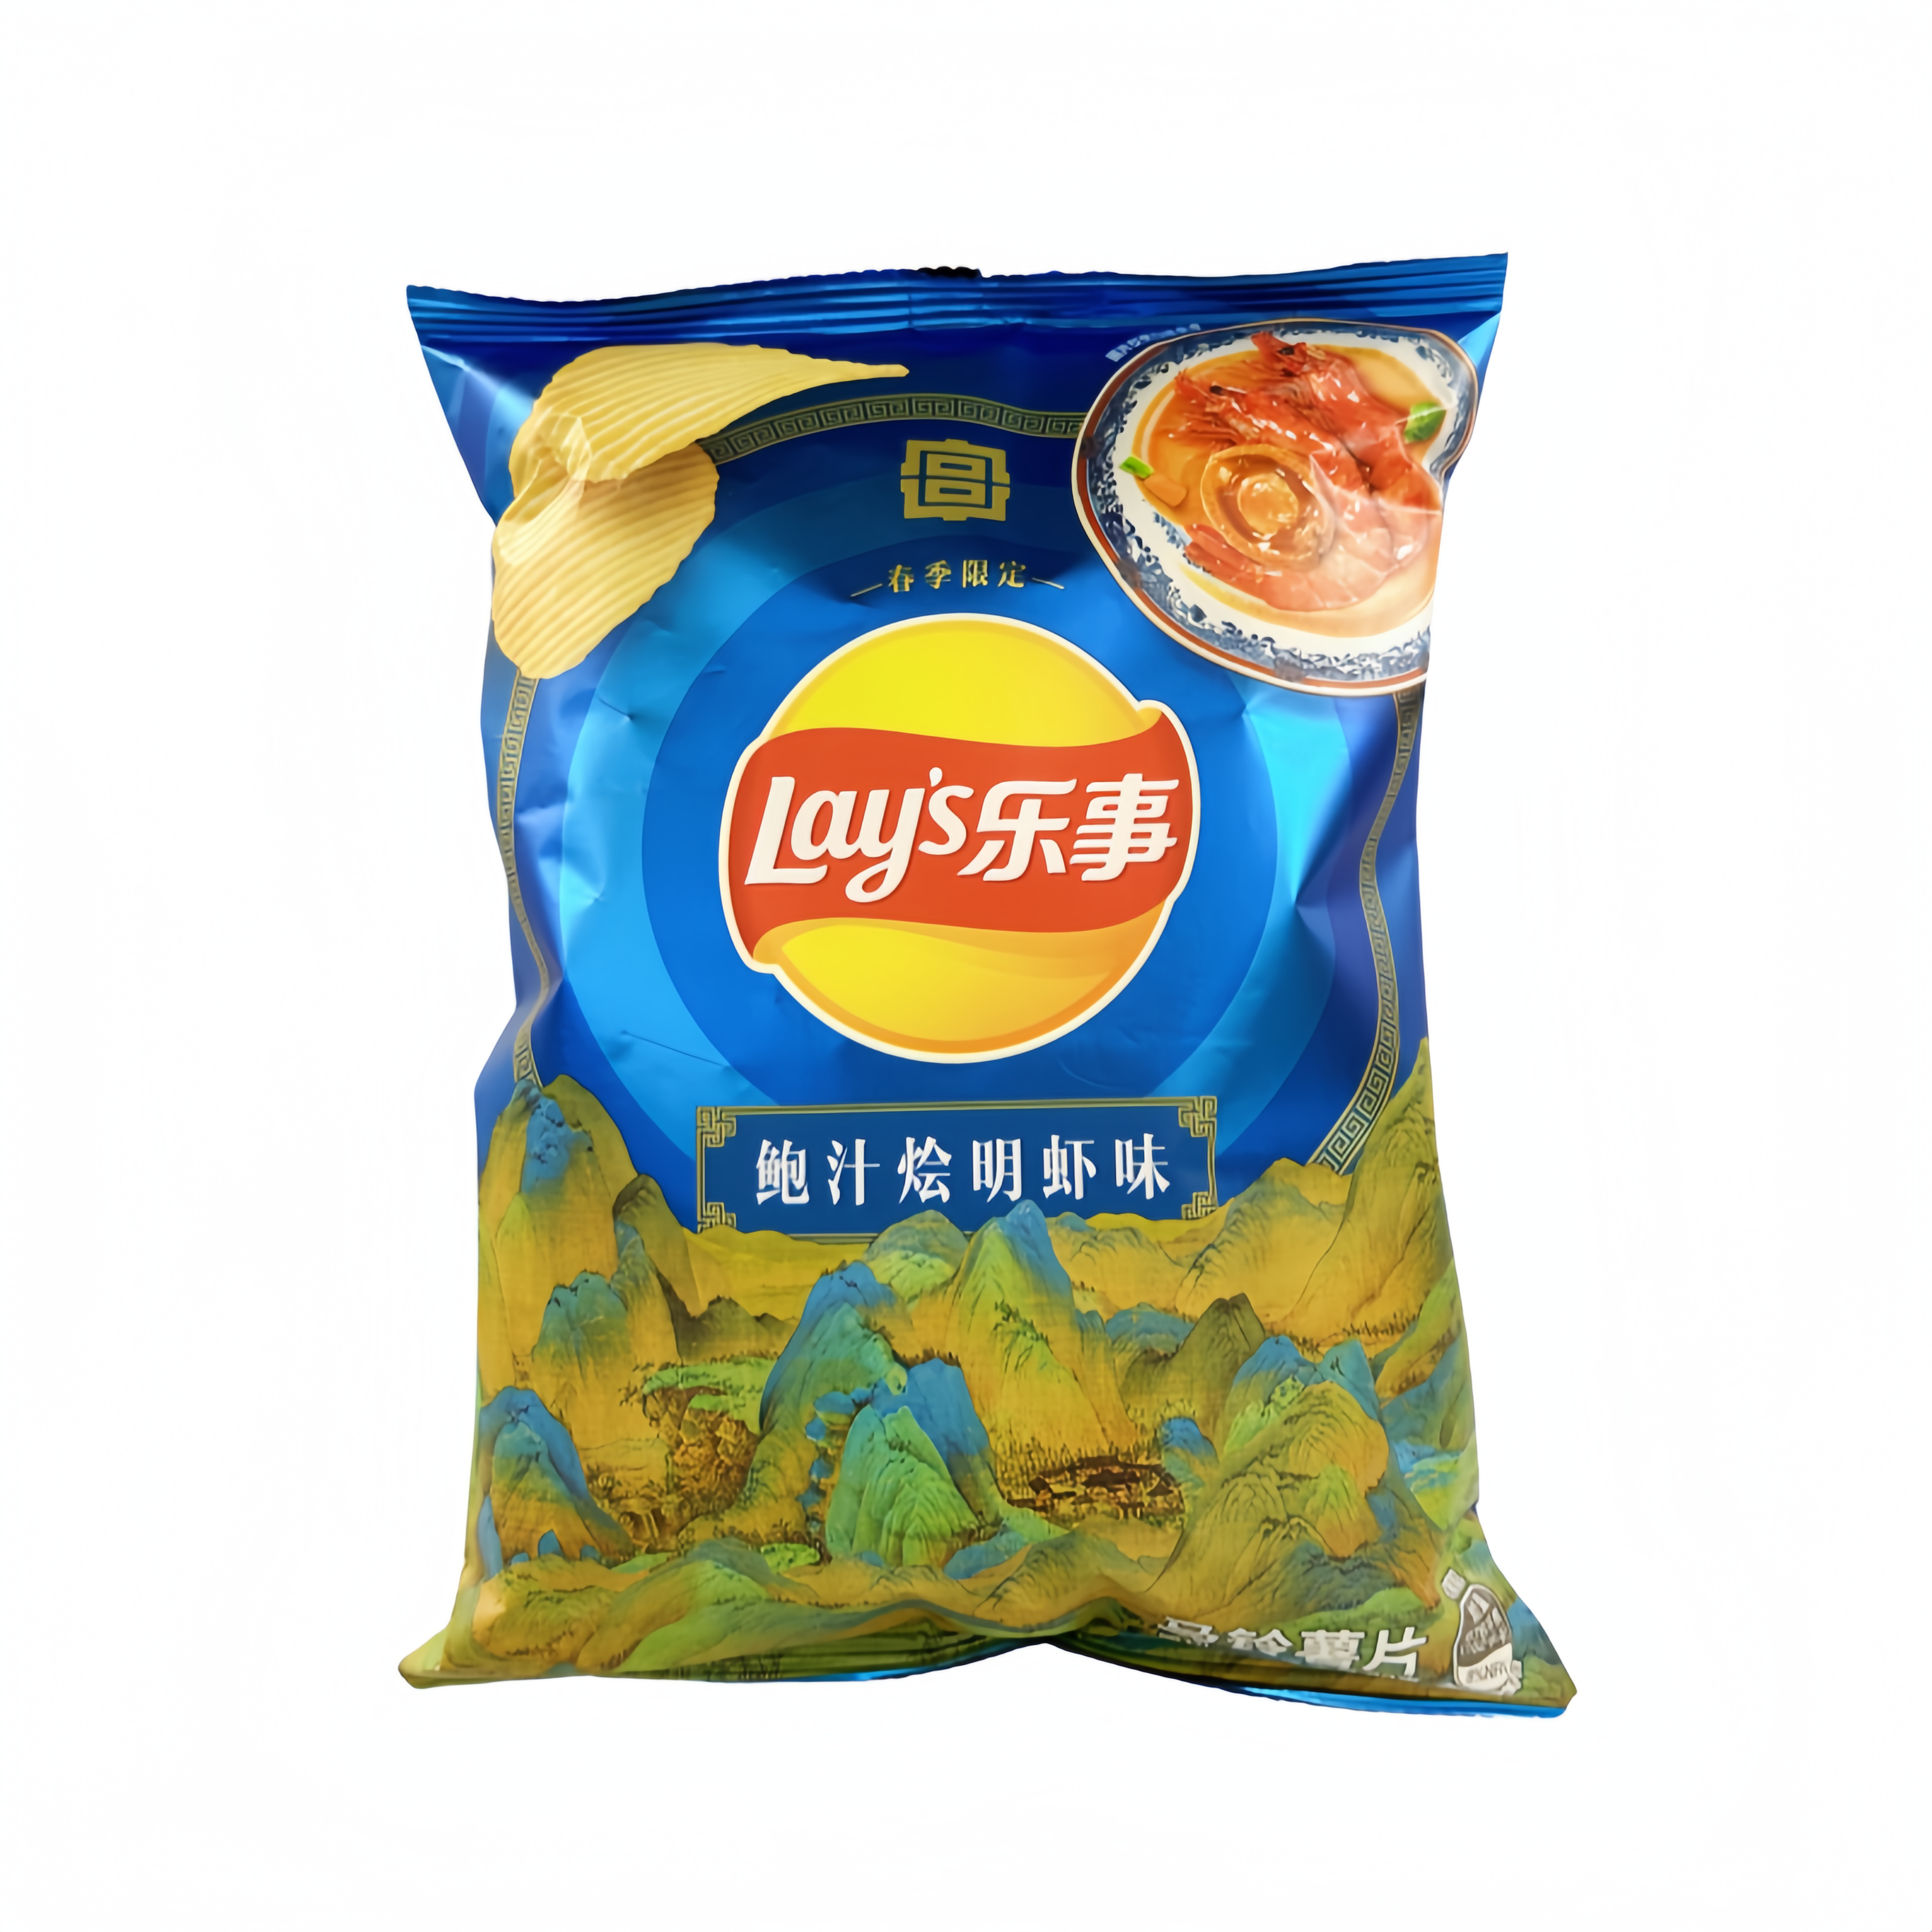 薯片 鲍汁烩明虾味 70g Lay's乐事 中国